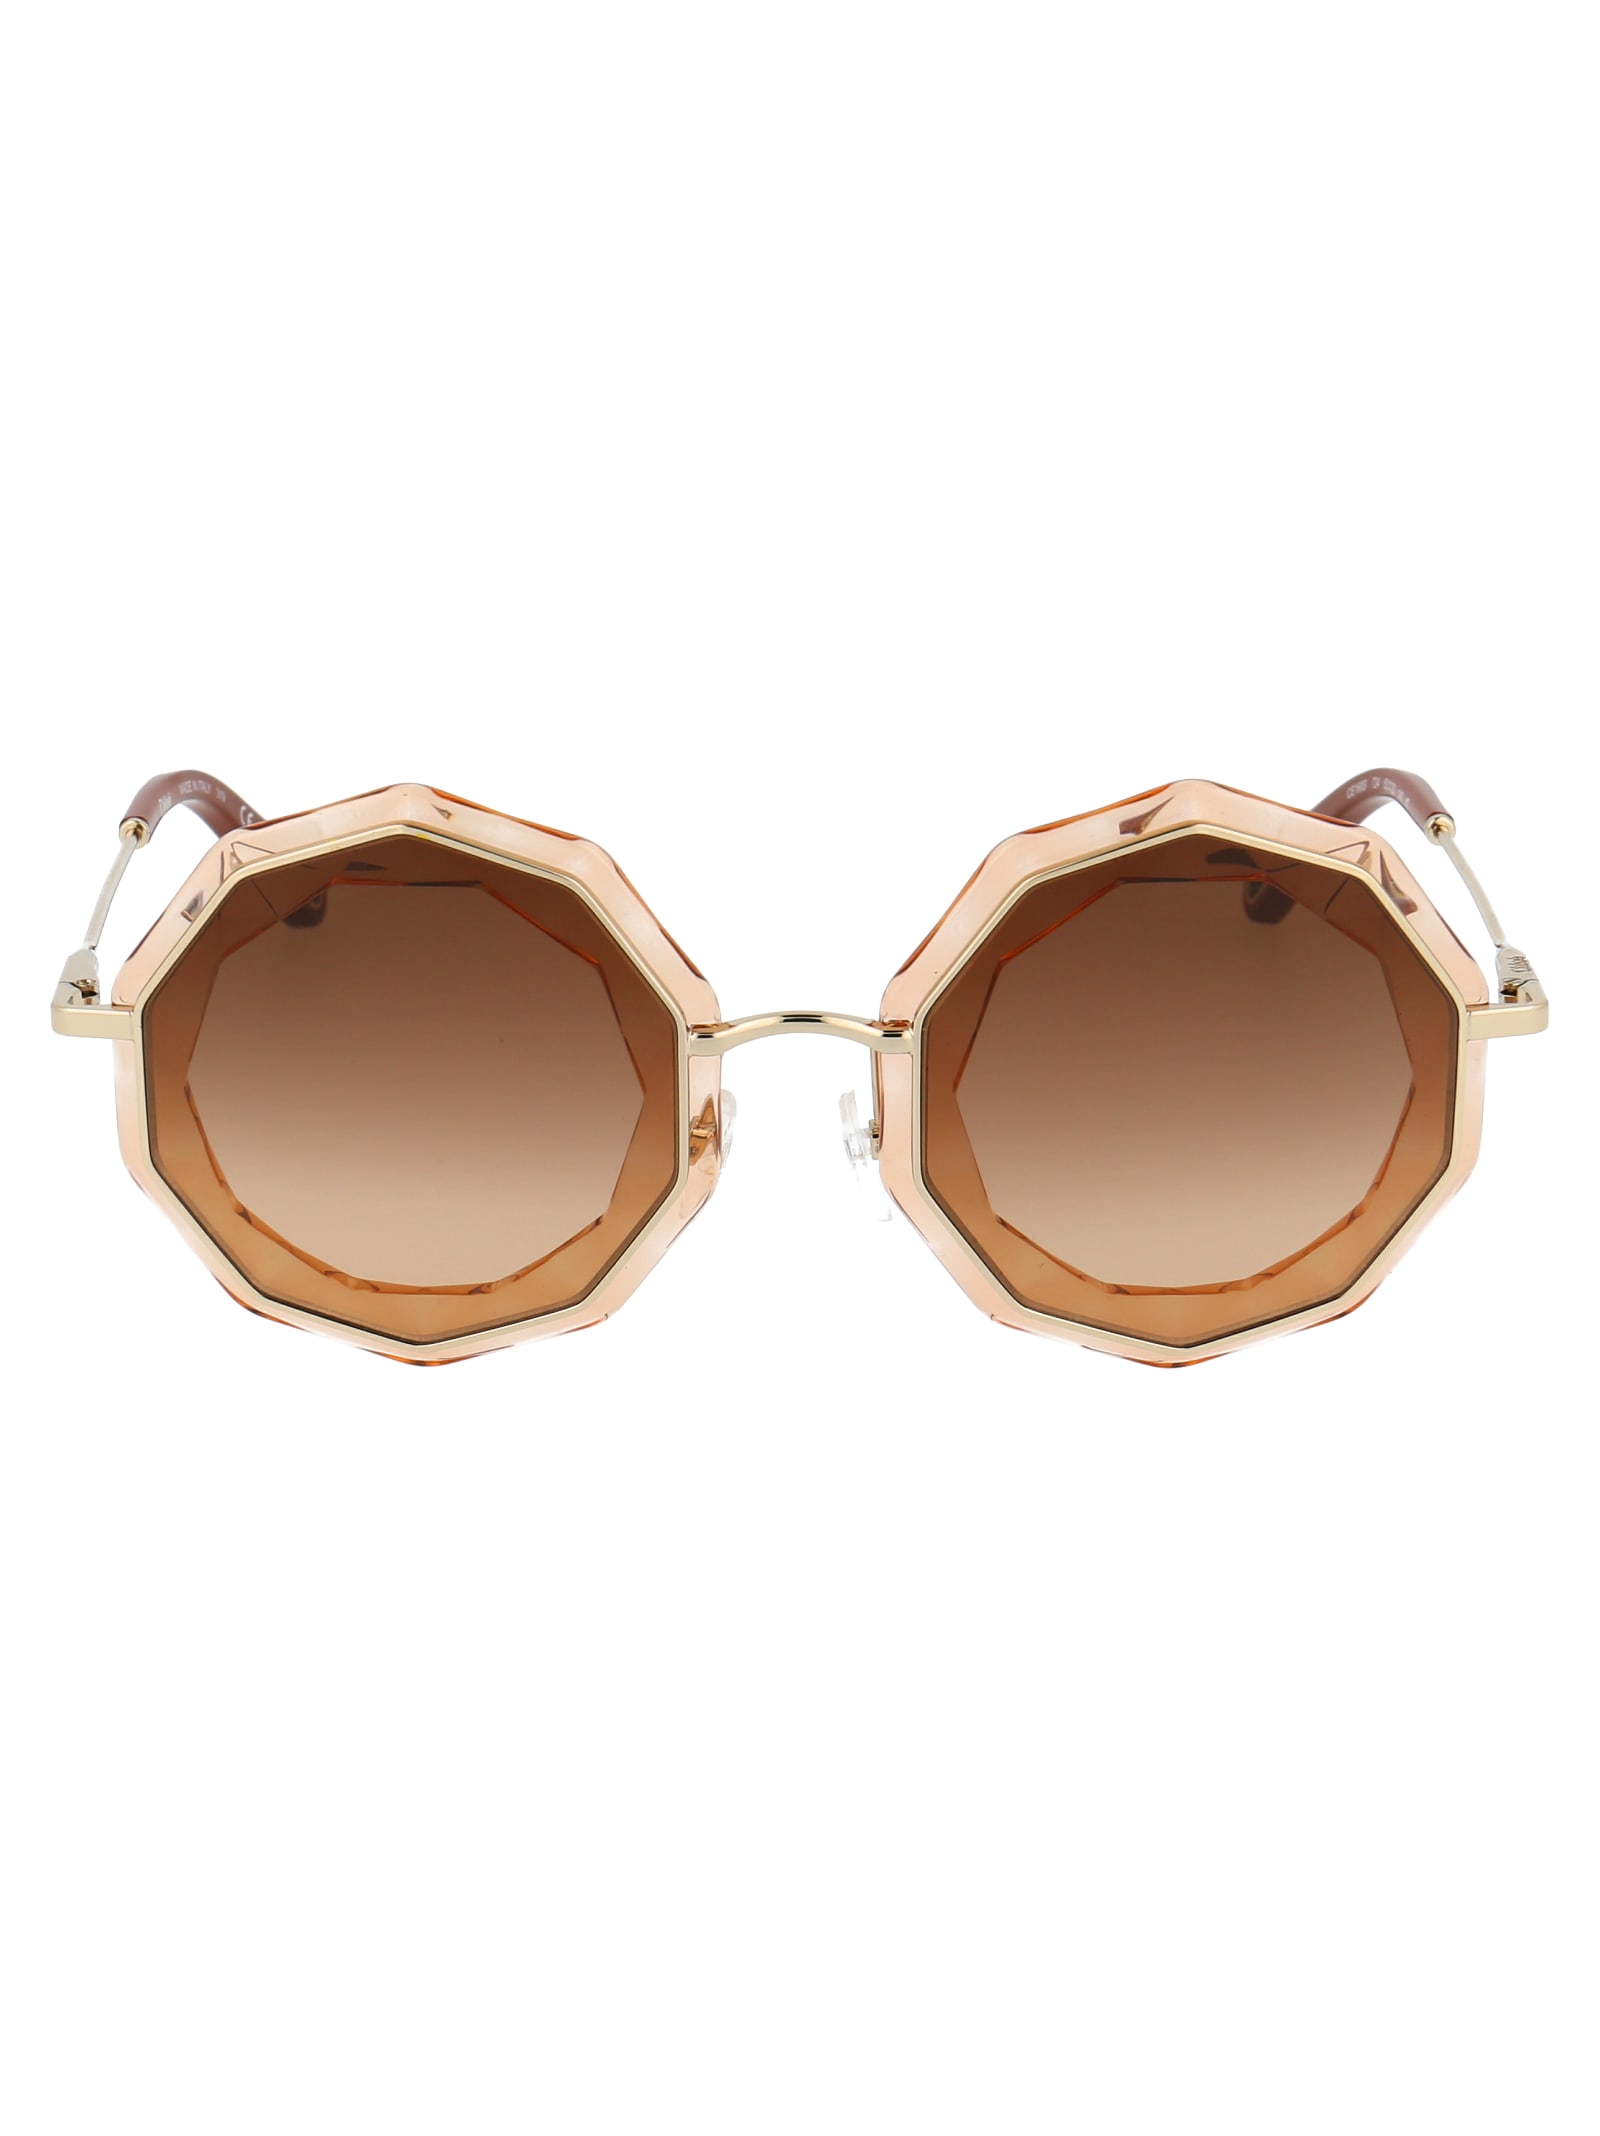 Chloé Sunglasses In Gold Peach